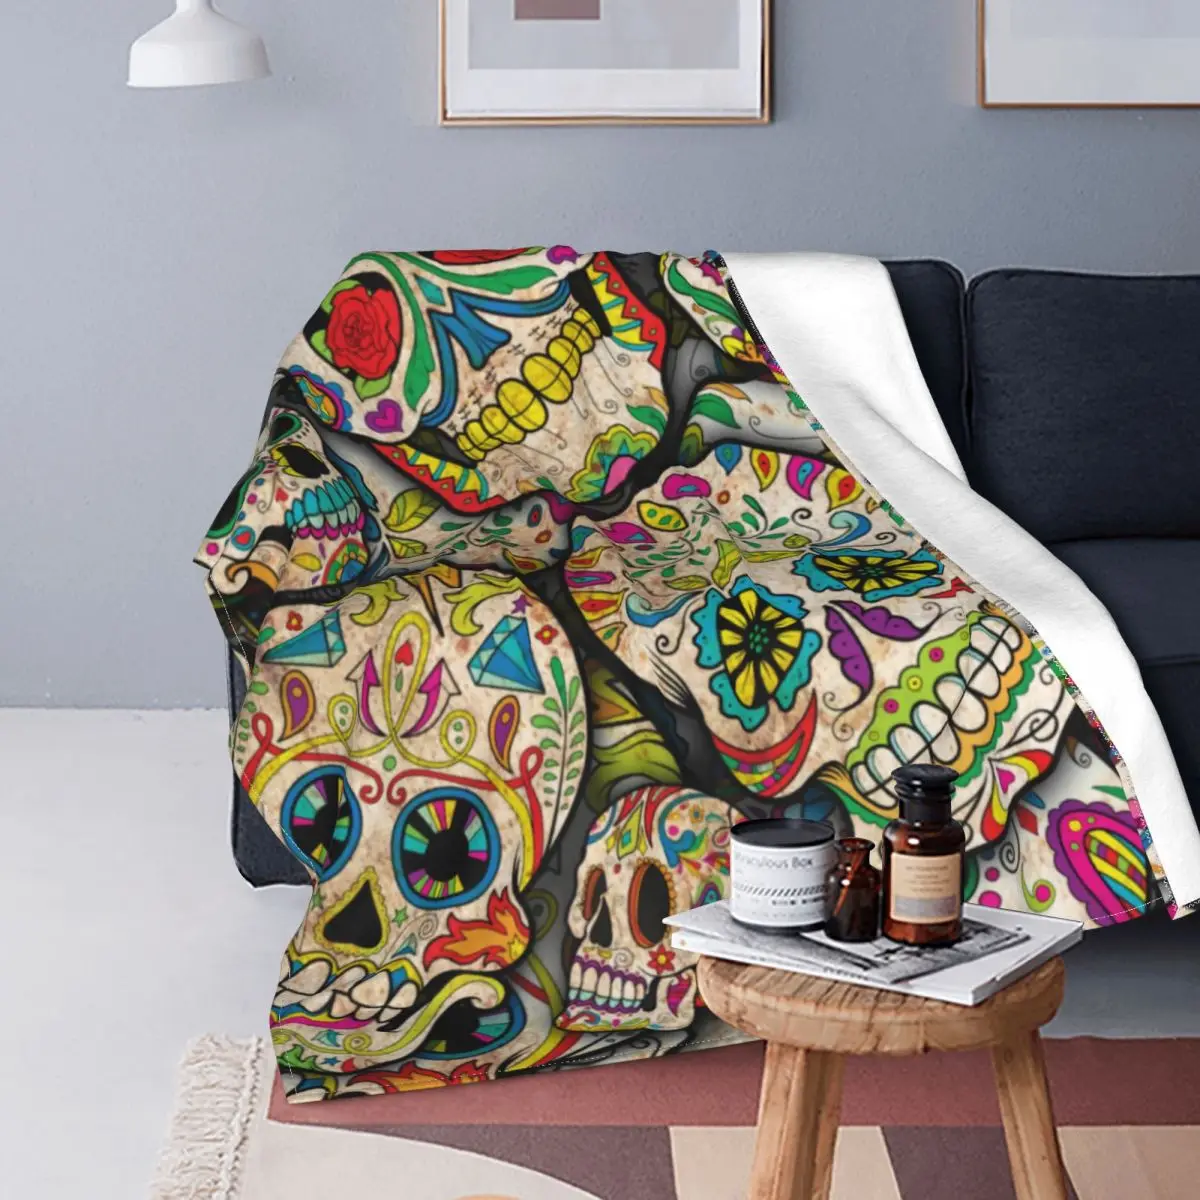 

Цветное одеяло с рисунком скелета и сахара, Крутое Флисовое одеяло с цветочным принтом, мягкое модное покрывало для путешествий